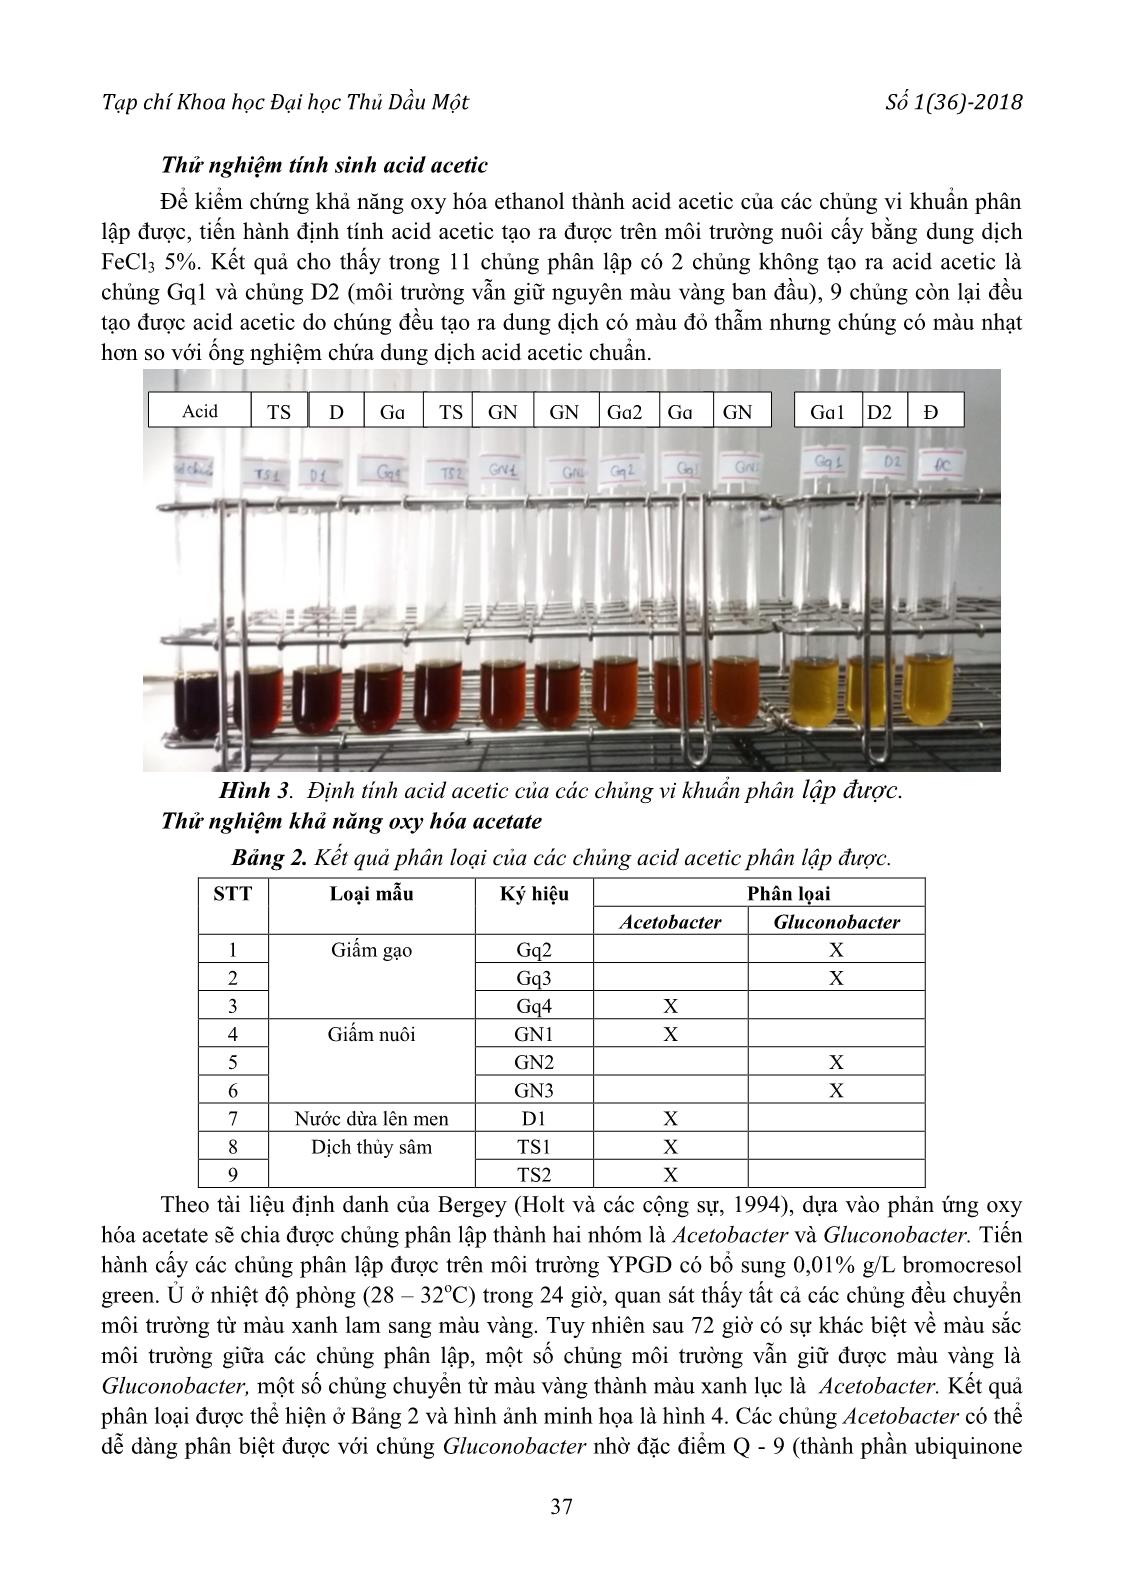 Phân lập, tuyển chọn chủng vi khuẩn Acetobacter có khả năng Oxy hóa Ethanol cao và thử nghiệm lên men giấm dứa trang 5